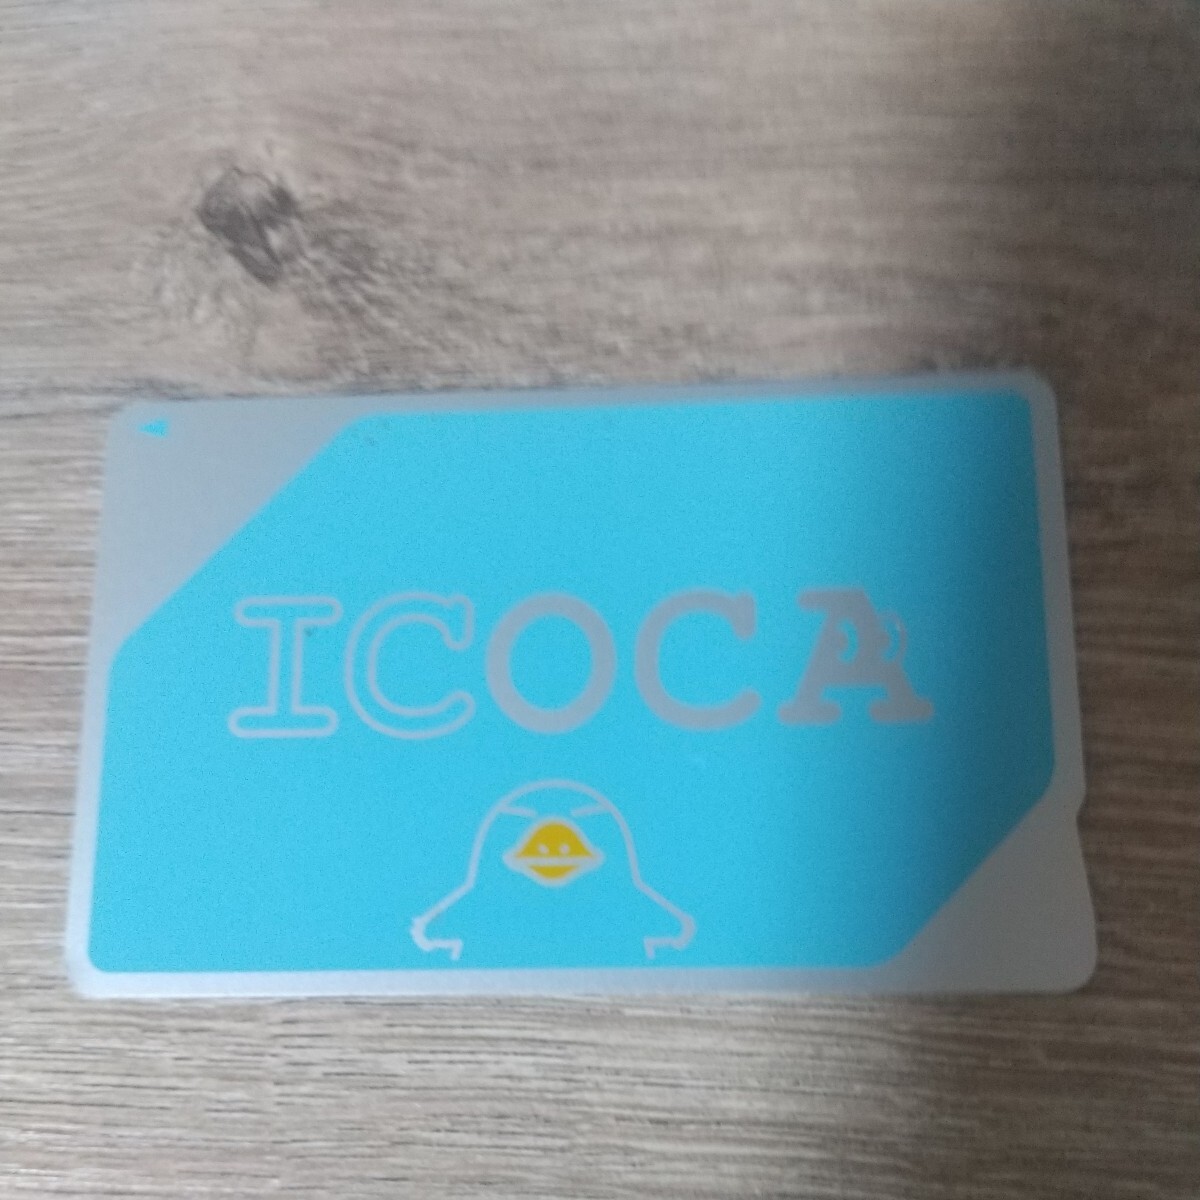 無記名ICOCA(チャージ残高０円) の画像1